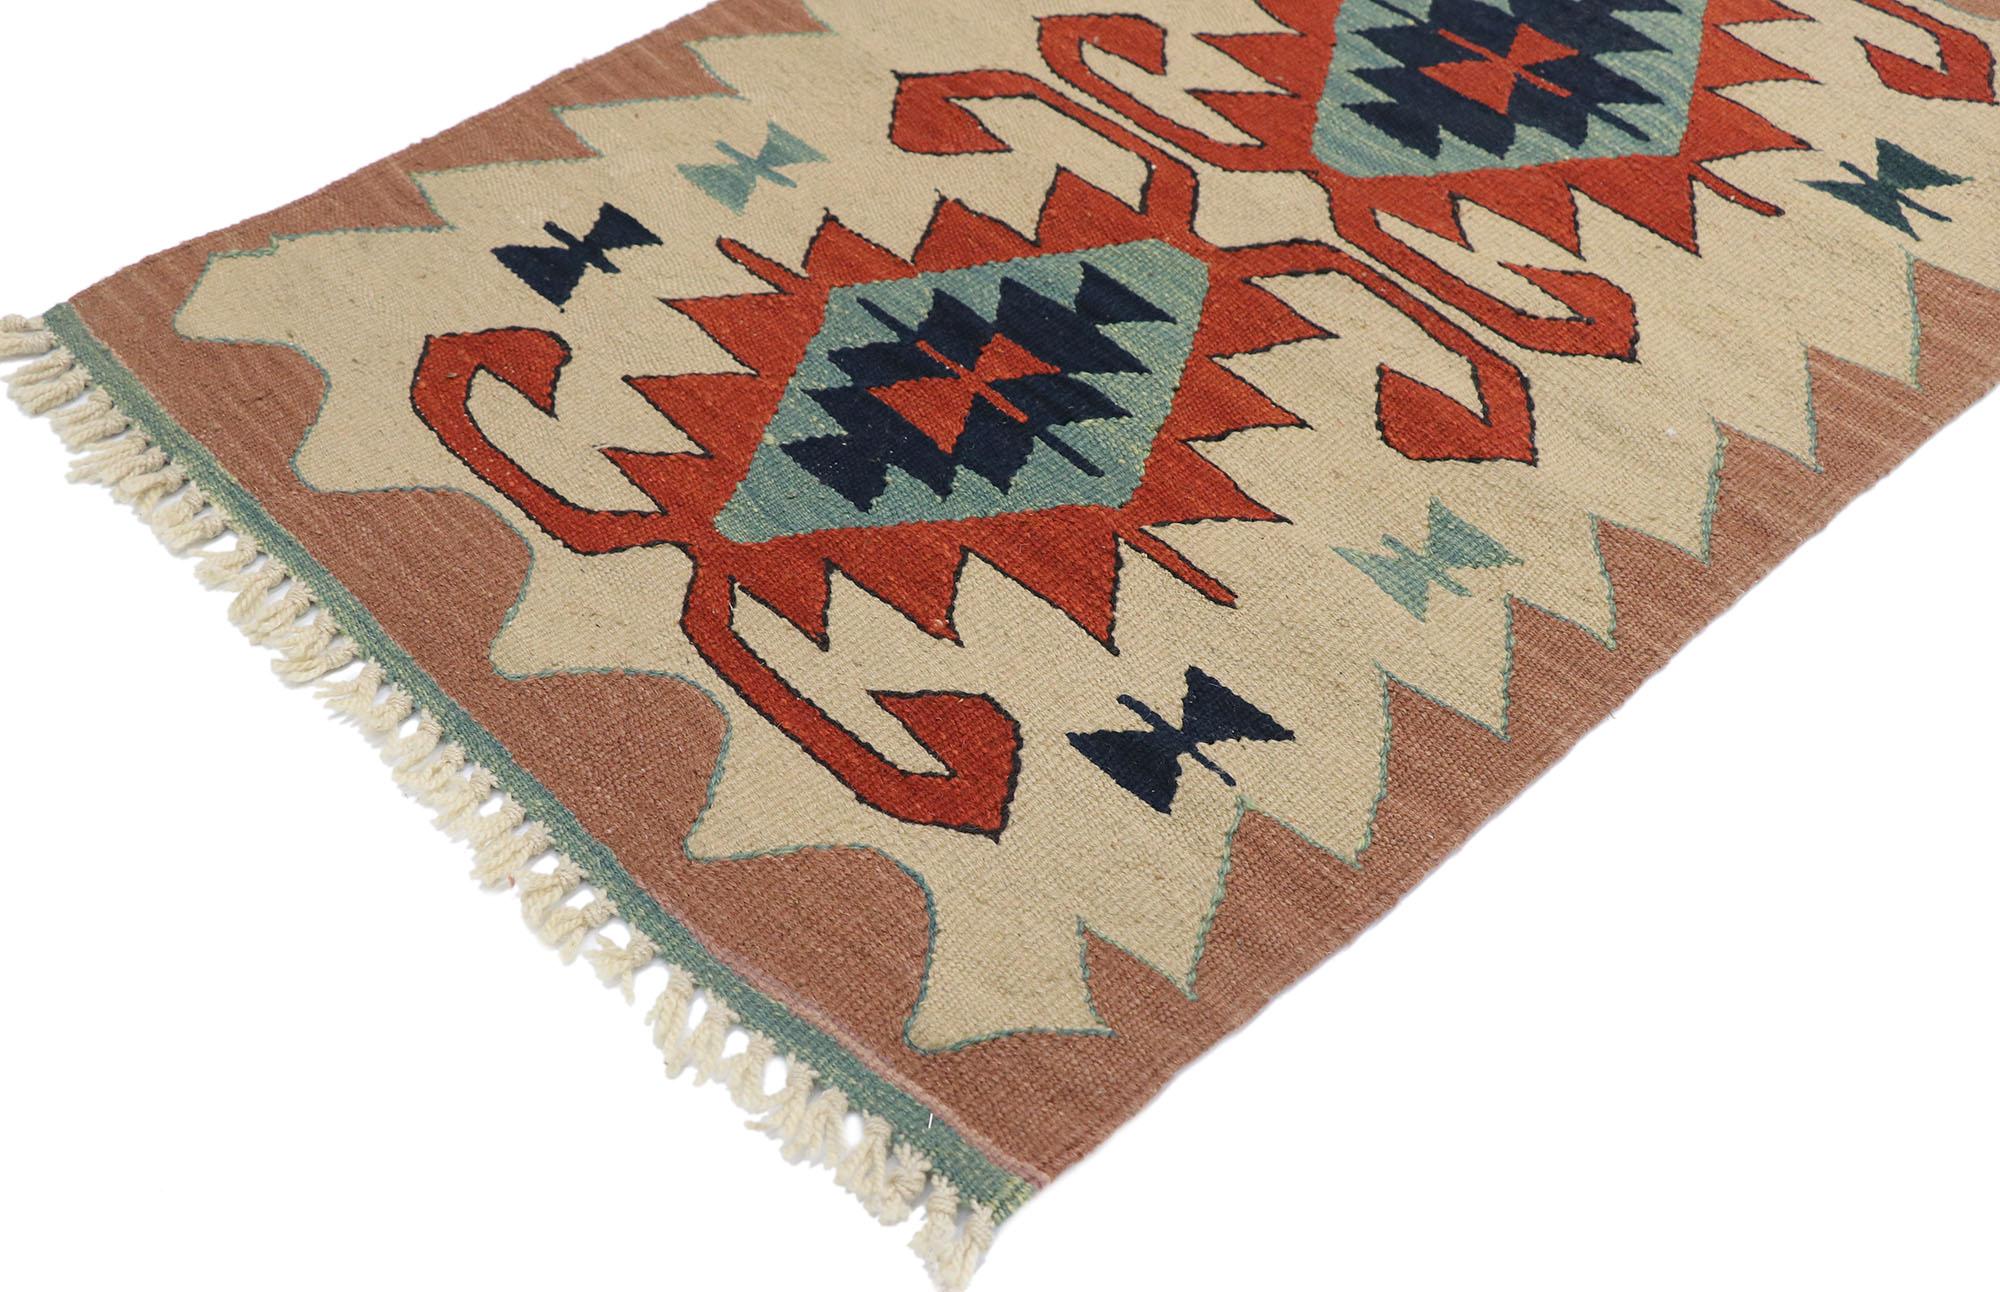 77859, tapis vintage Persan Shiraz Kilim avec style Tribal. Plein de petits détails et un design expressif audacieux combiné avec des couleurs vibrantes et un style tribal, ce tapis kilim persan vintage en laine tissé à la main est une vision